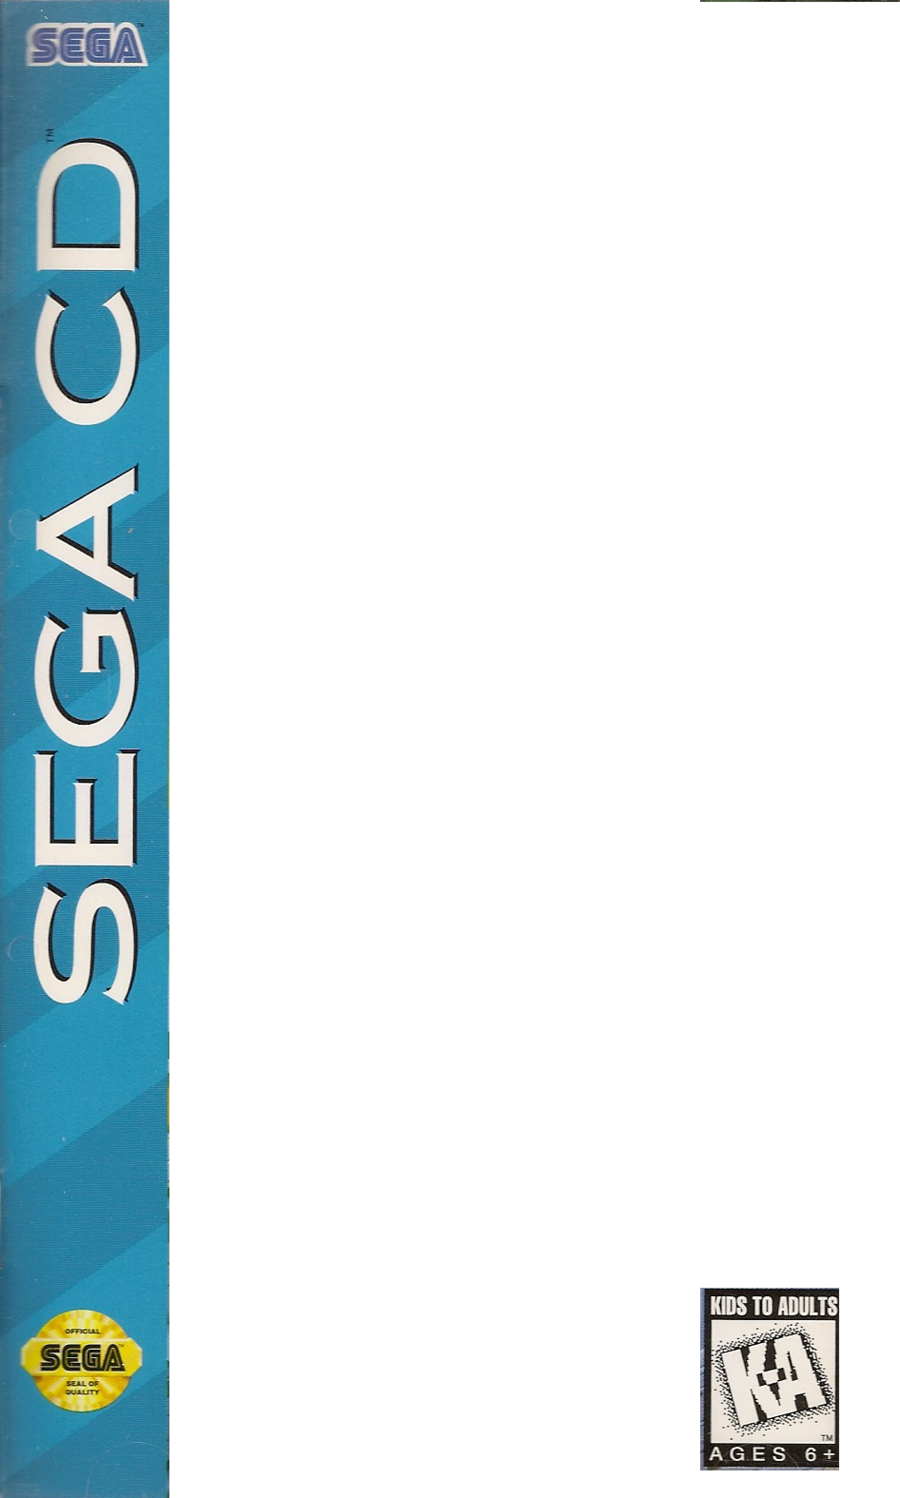 Sega Cd Clipart Sega Cd Sega Saturn Super Nintendo - Kids To Adults (900x1498), Png Download